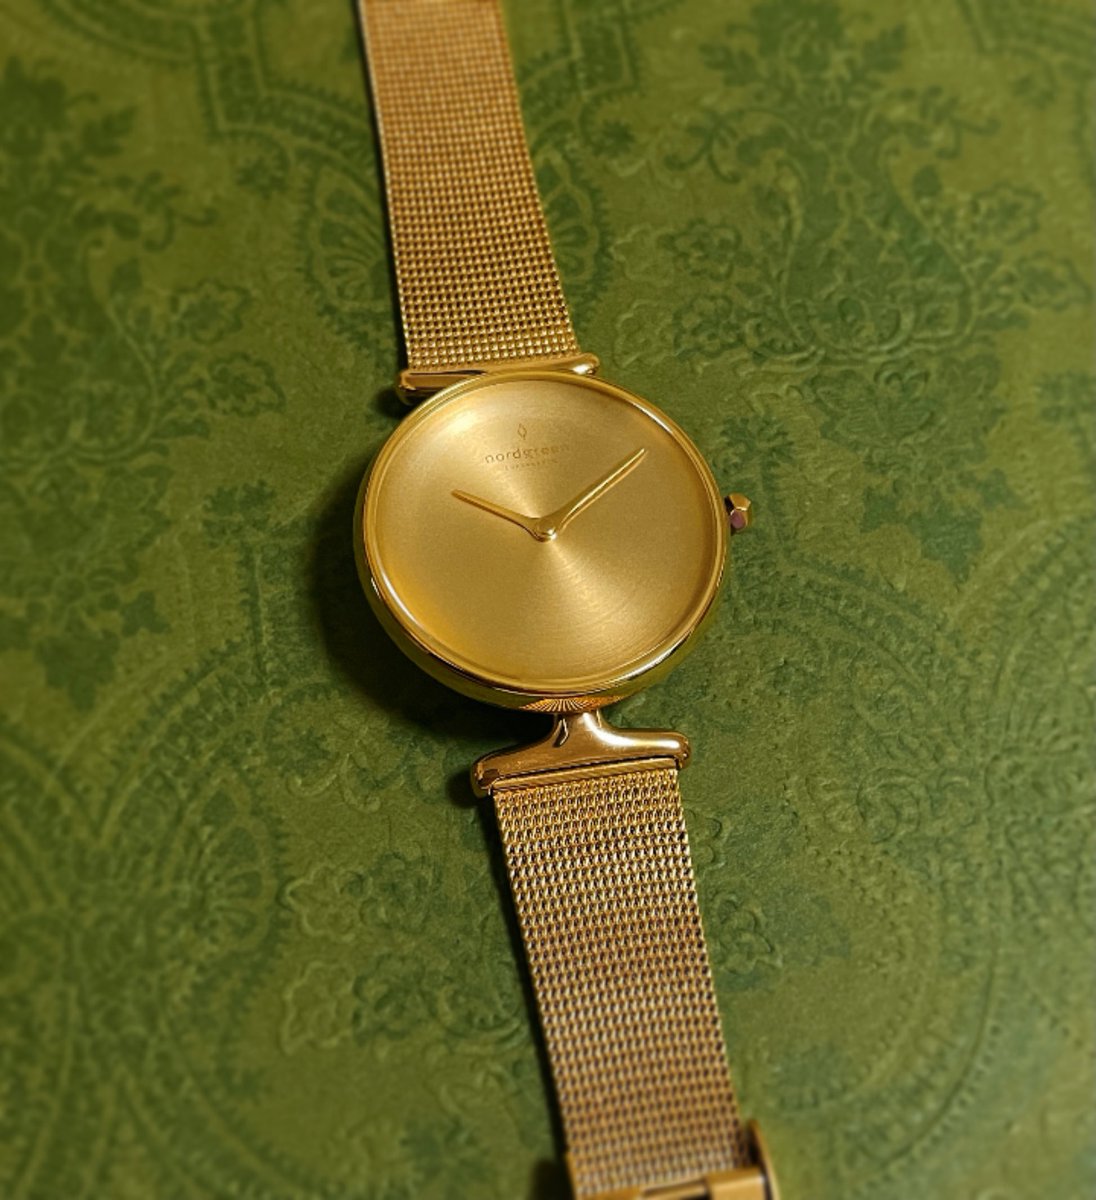 「この度デンマークの腕時計ブランド、Nordgreen様とコラボさせて頂きました!」|宇井田ルイのイラスト